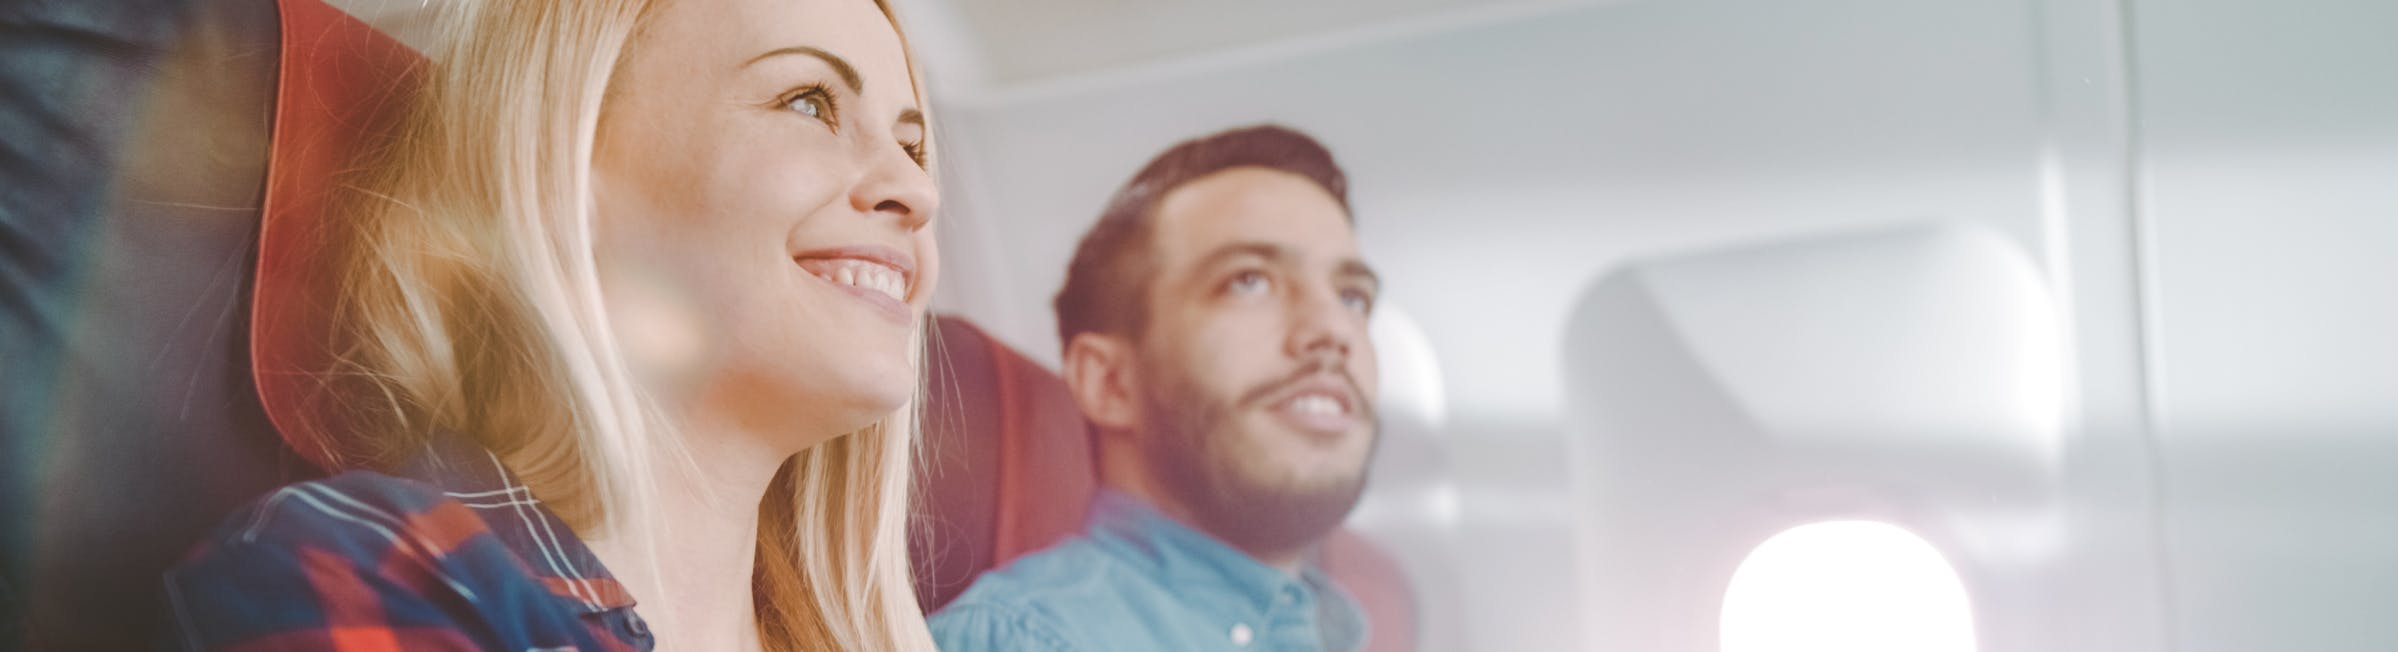 deux personnes assises dans un avion